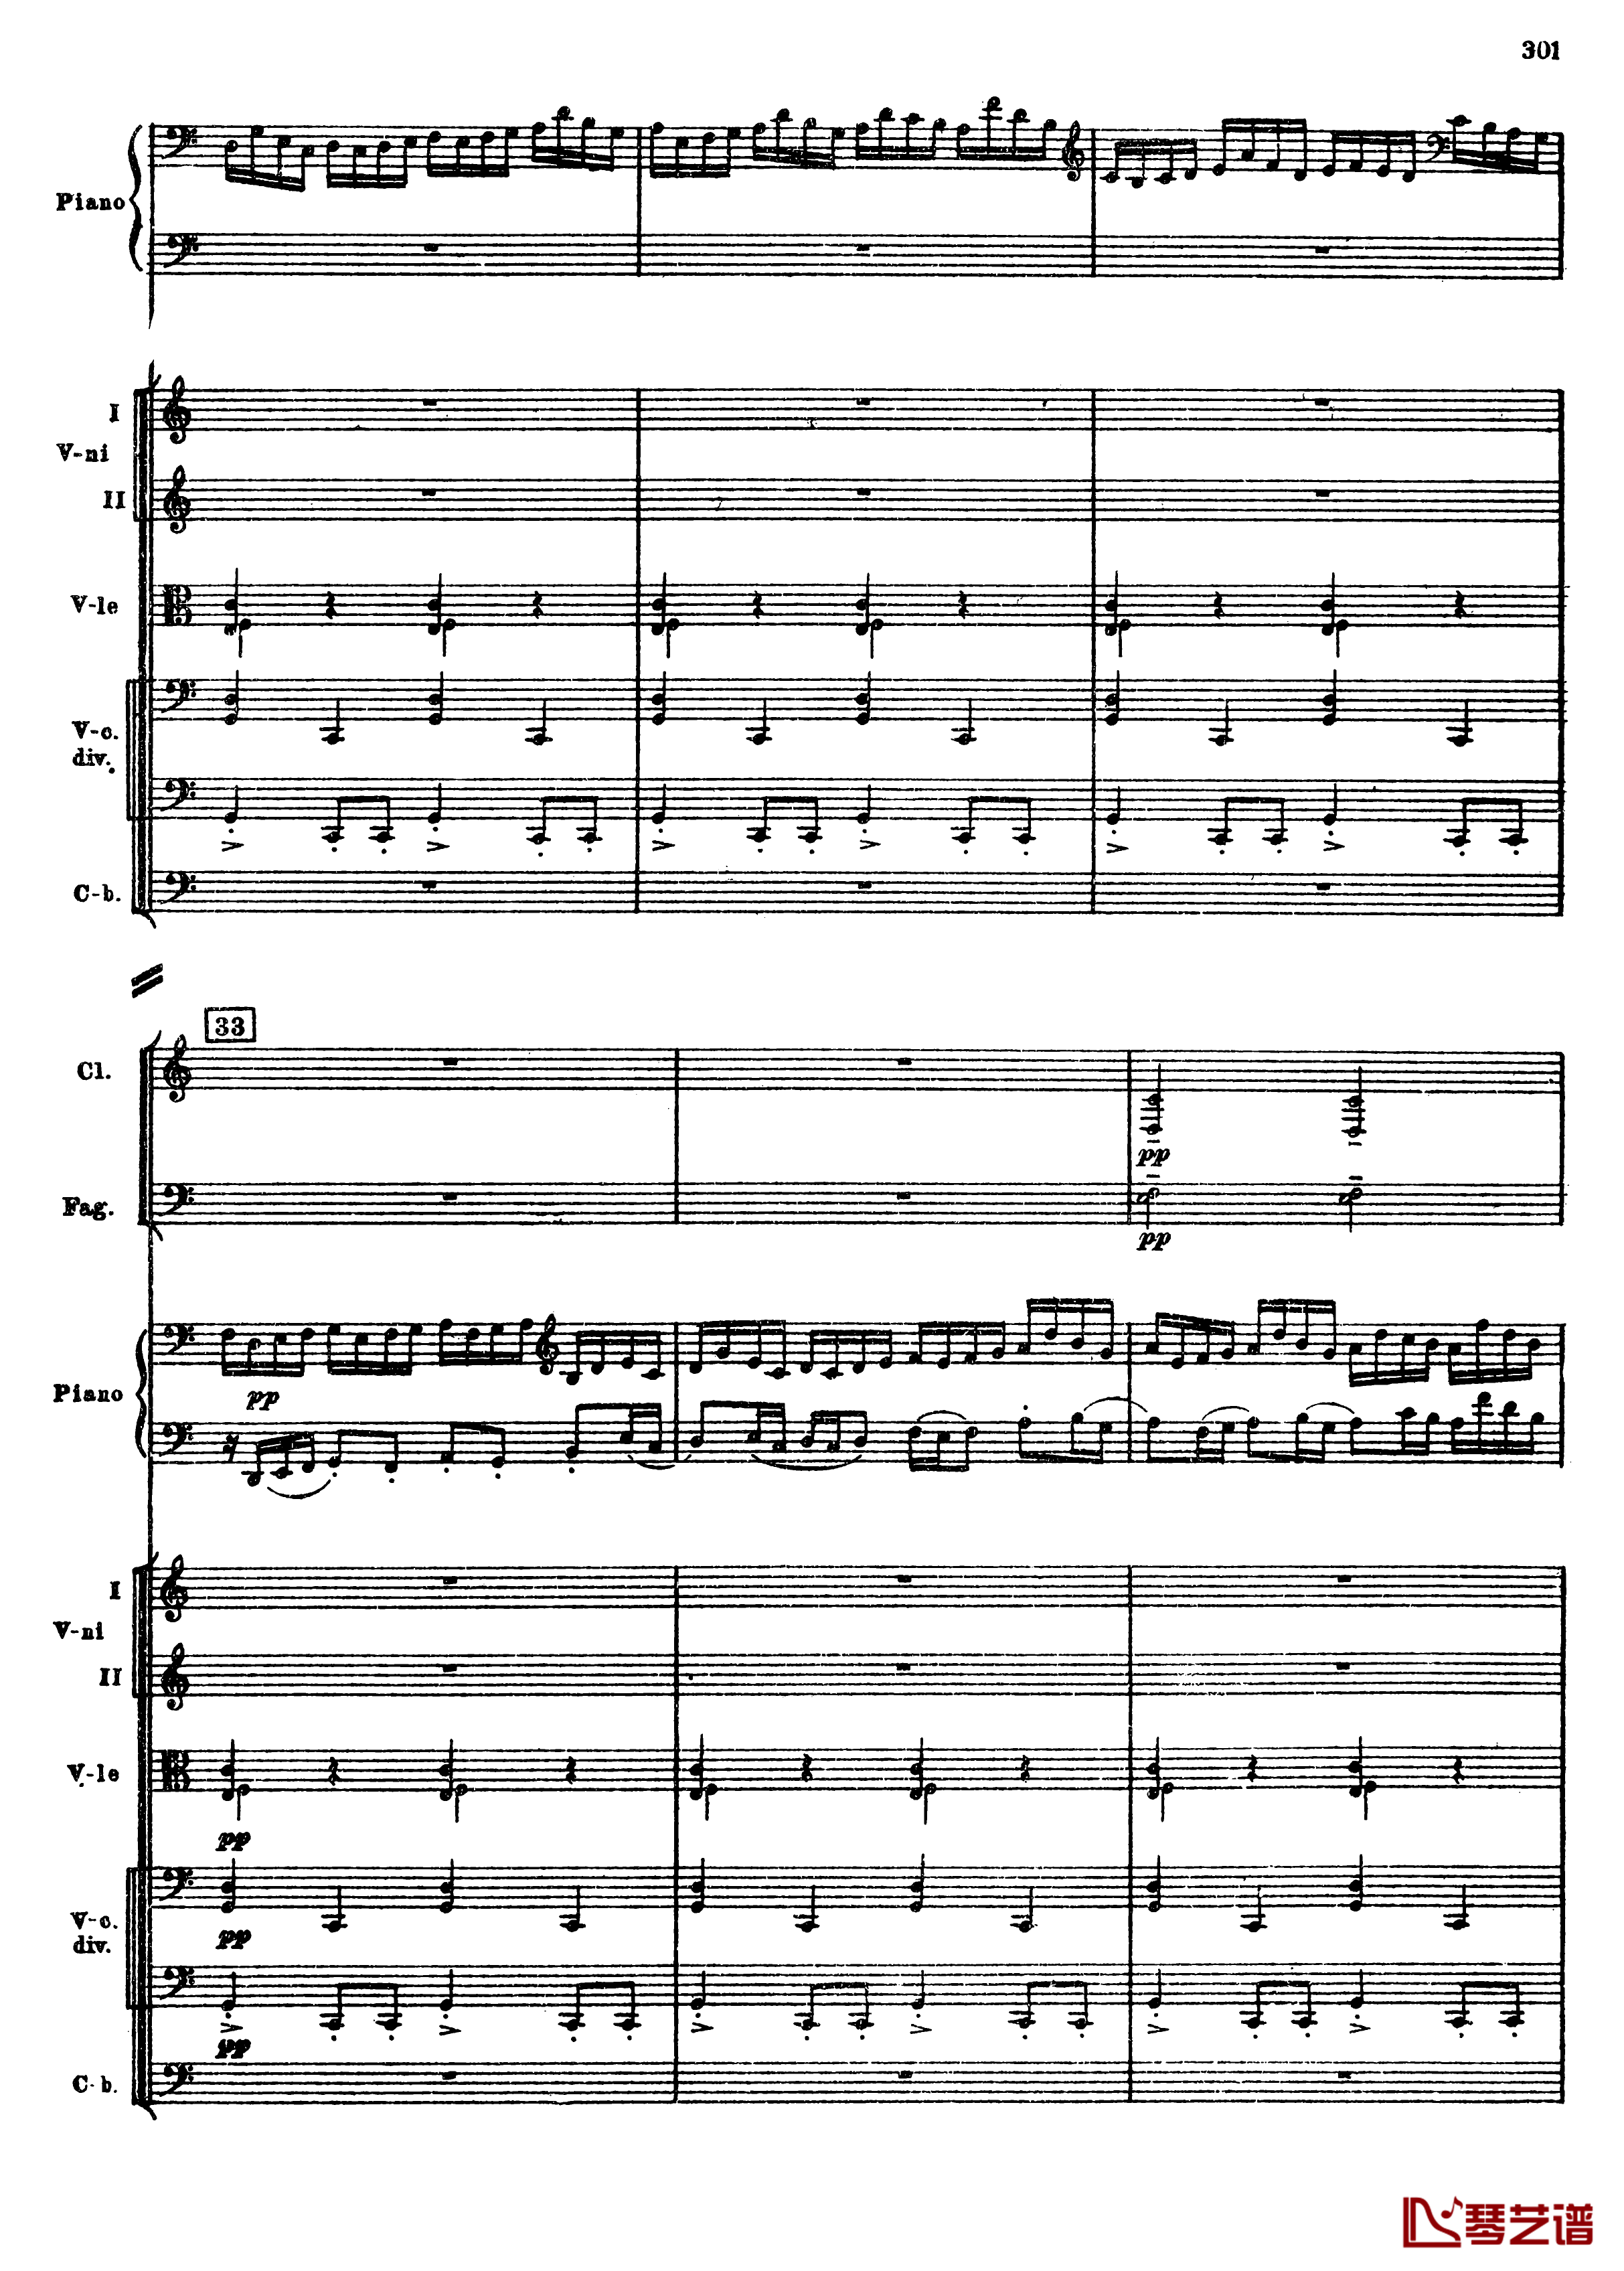 普罗科菲耶夫第三钢琴协奏曲钢琴谱-总谱-普罗科非耶夫33